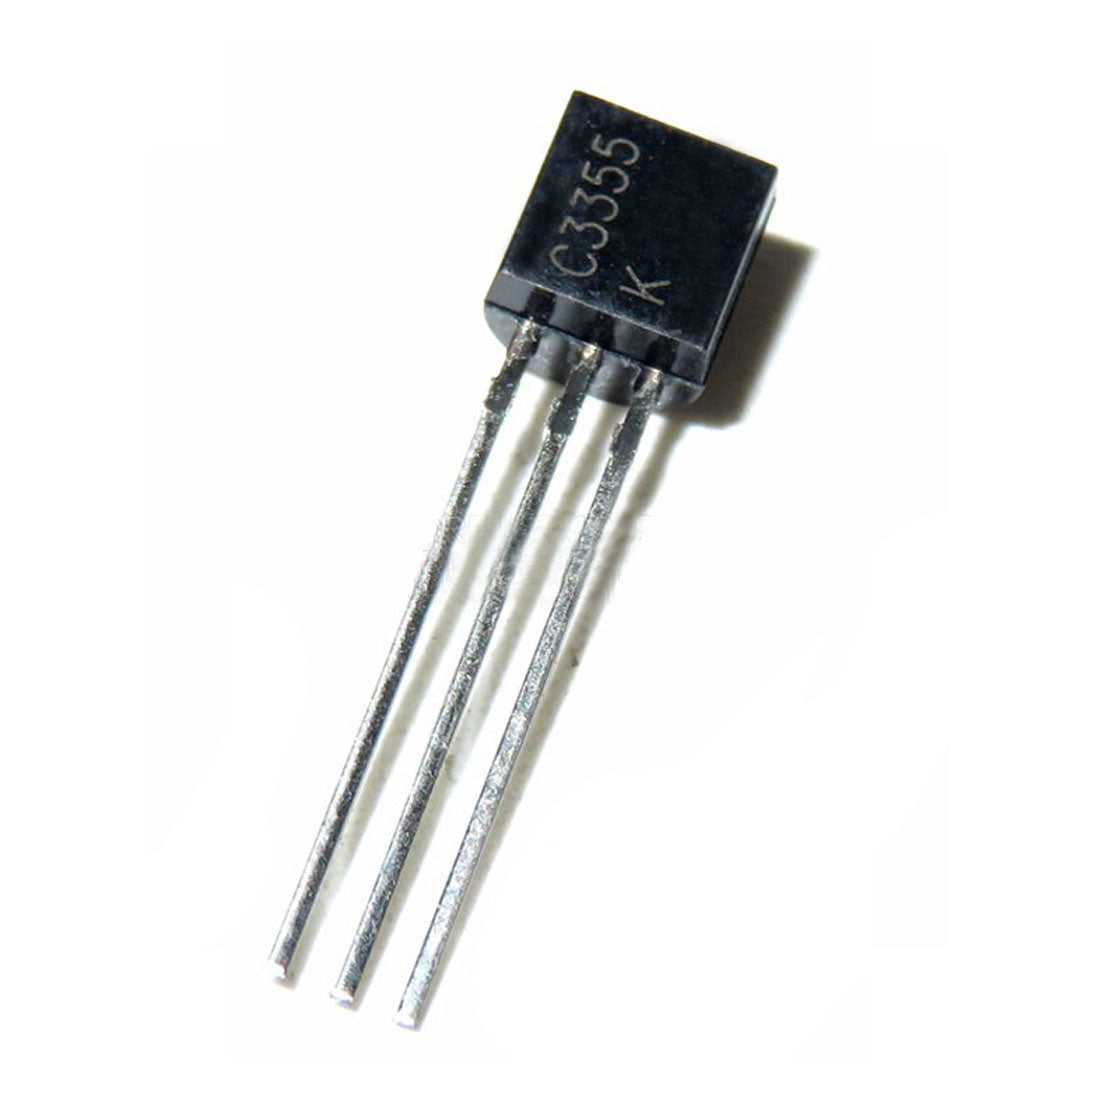 C3355 Componente elettronico, circuito integrato, transistor, 3 contatti